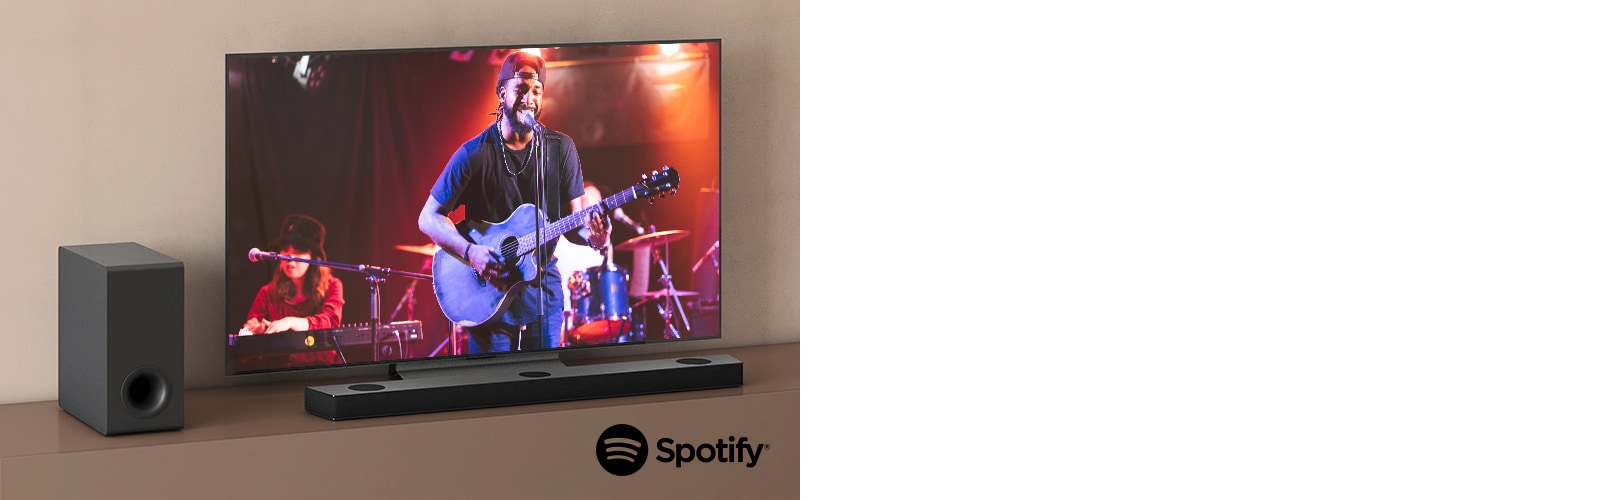 Televizor LG zobrazuje koncert a Sound Bar LG je umístěn pod televizorem. Vlevo na hnědé polici je subwoofer.